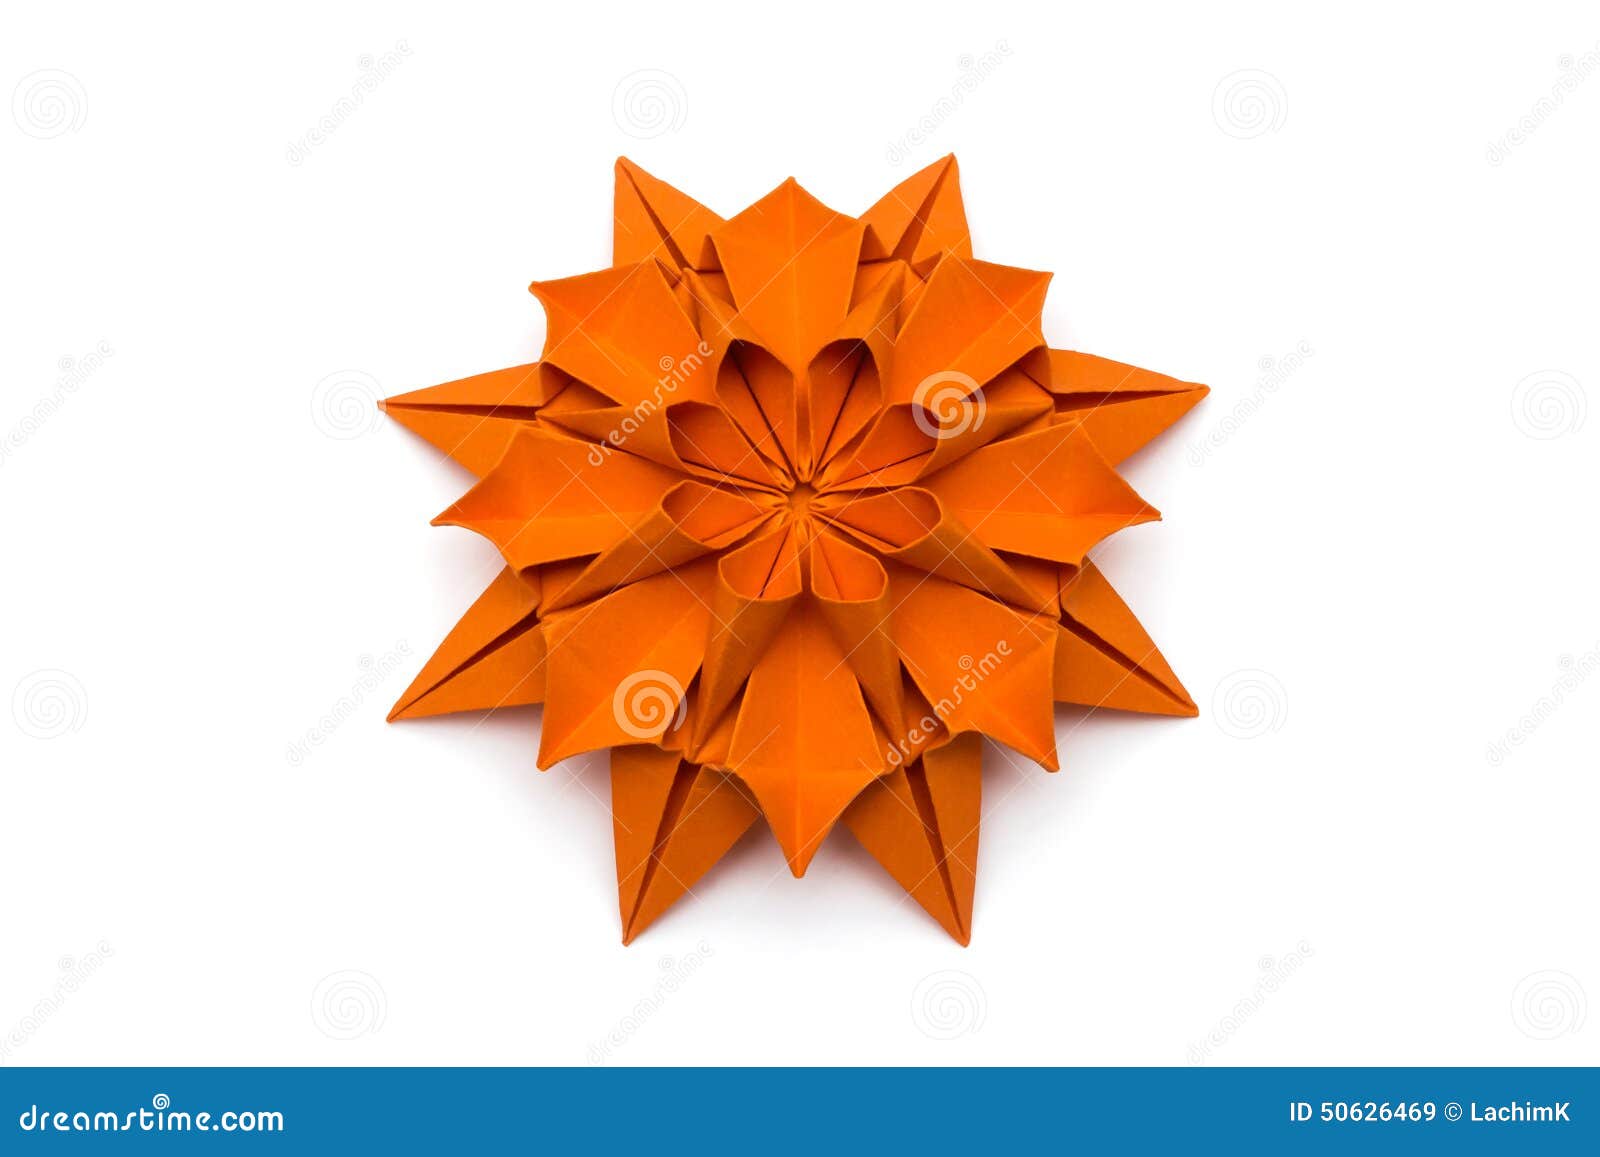 origami dahlia flower